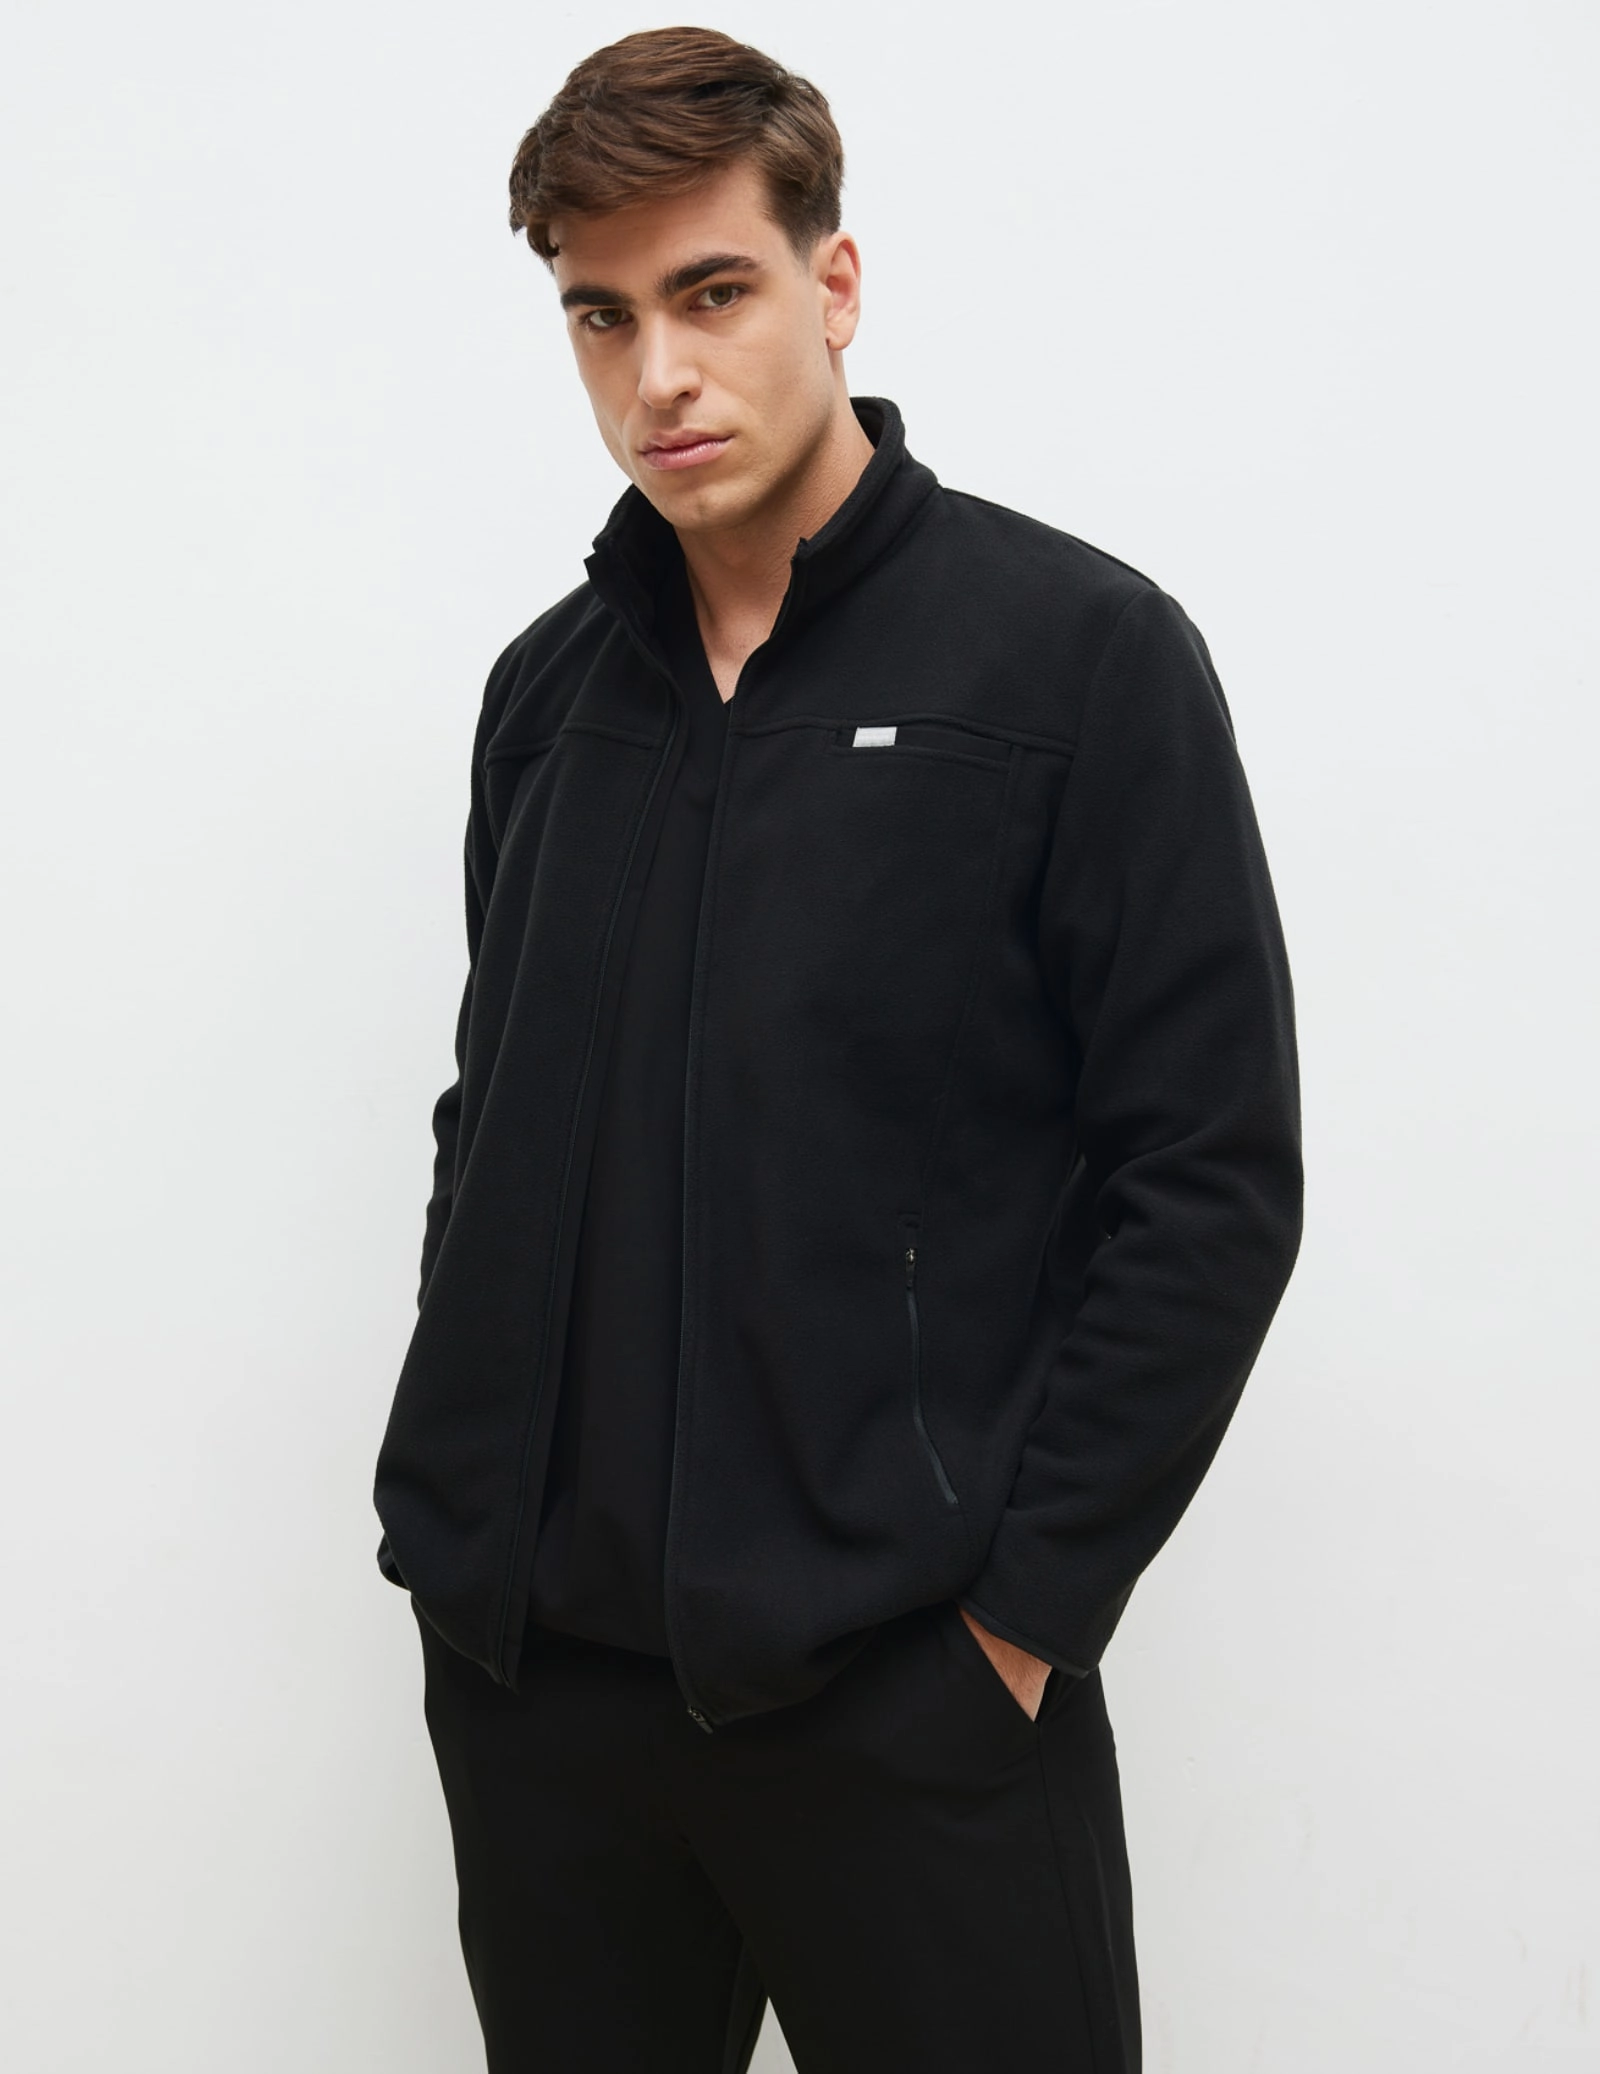 Men's COZY HEAT fleece sweatshirt - Black